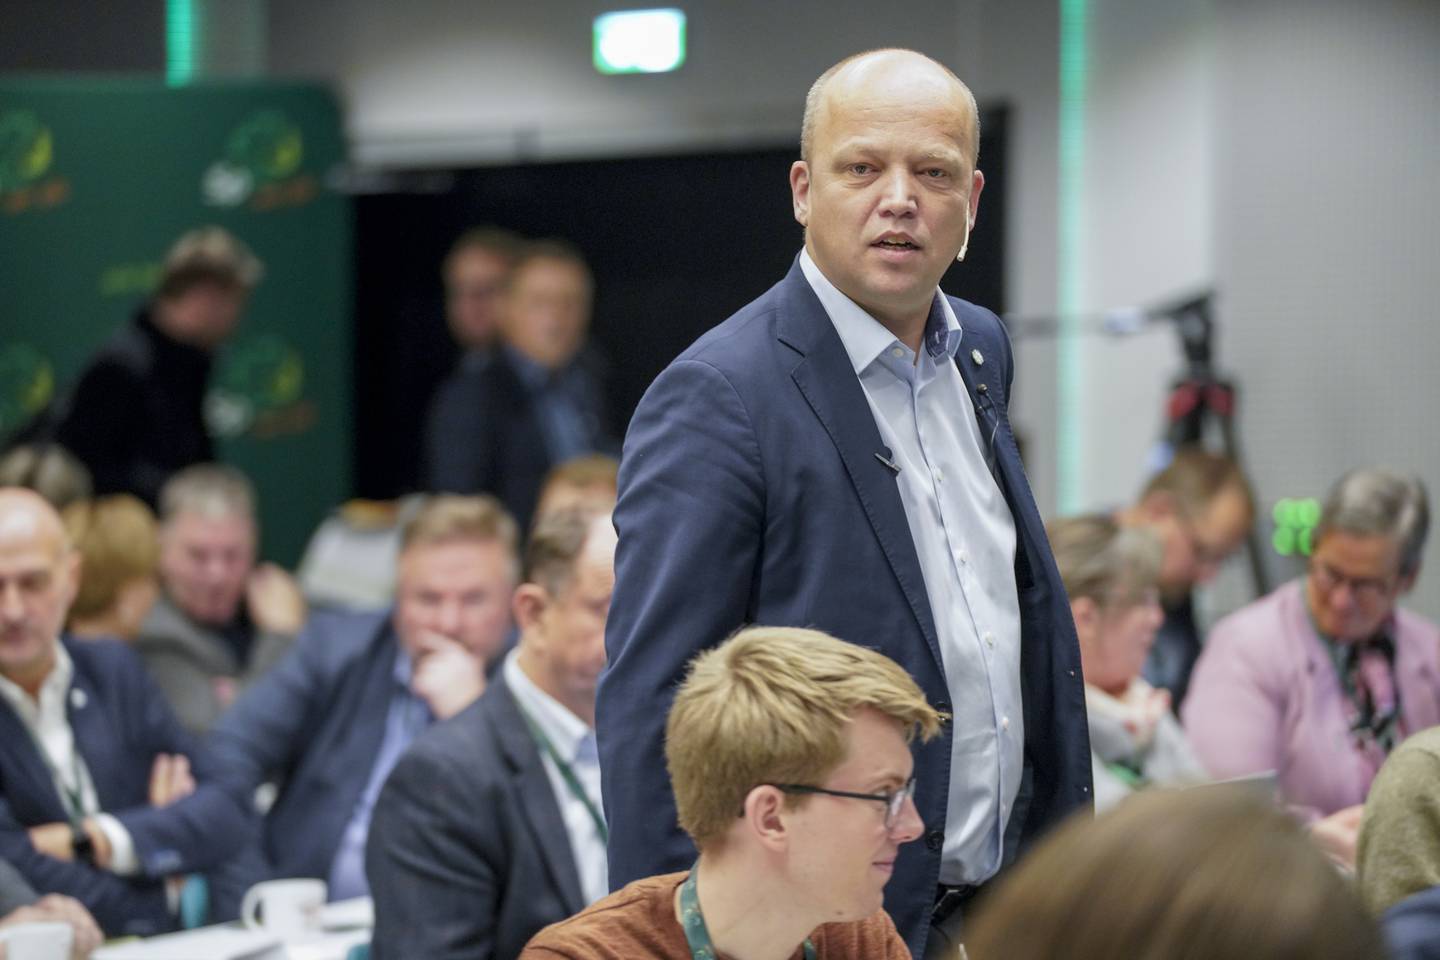 Finansminister og partileder Trygve Slagsvold Vedum under Senterpartiets landsstyremøte.
Foto: Terje Bendiksby / NTB